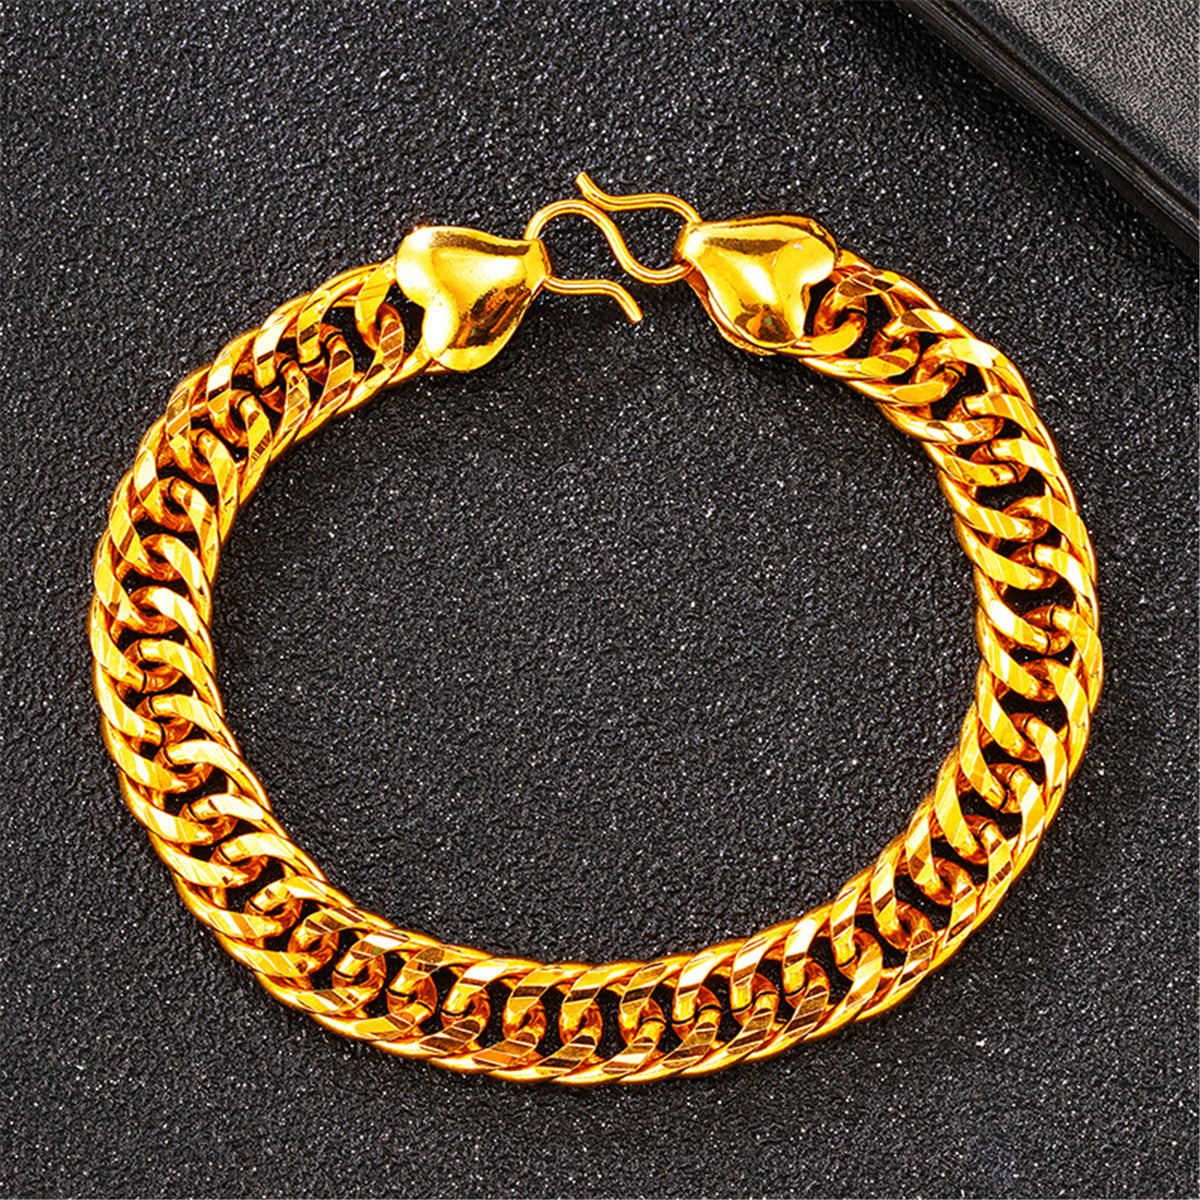 24K Gold-Plated Figaro Link Bracelet